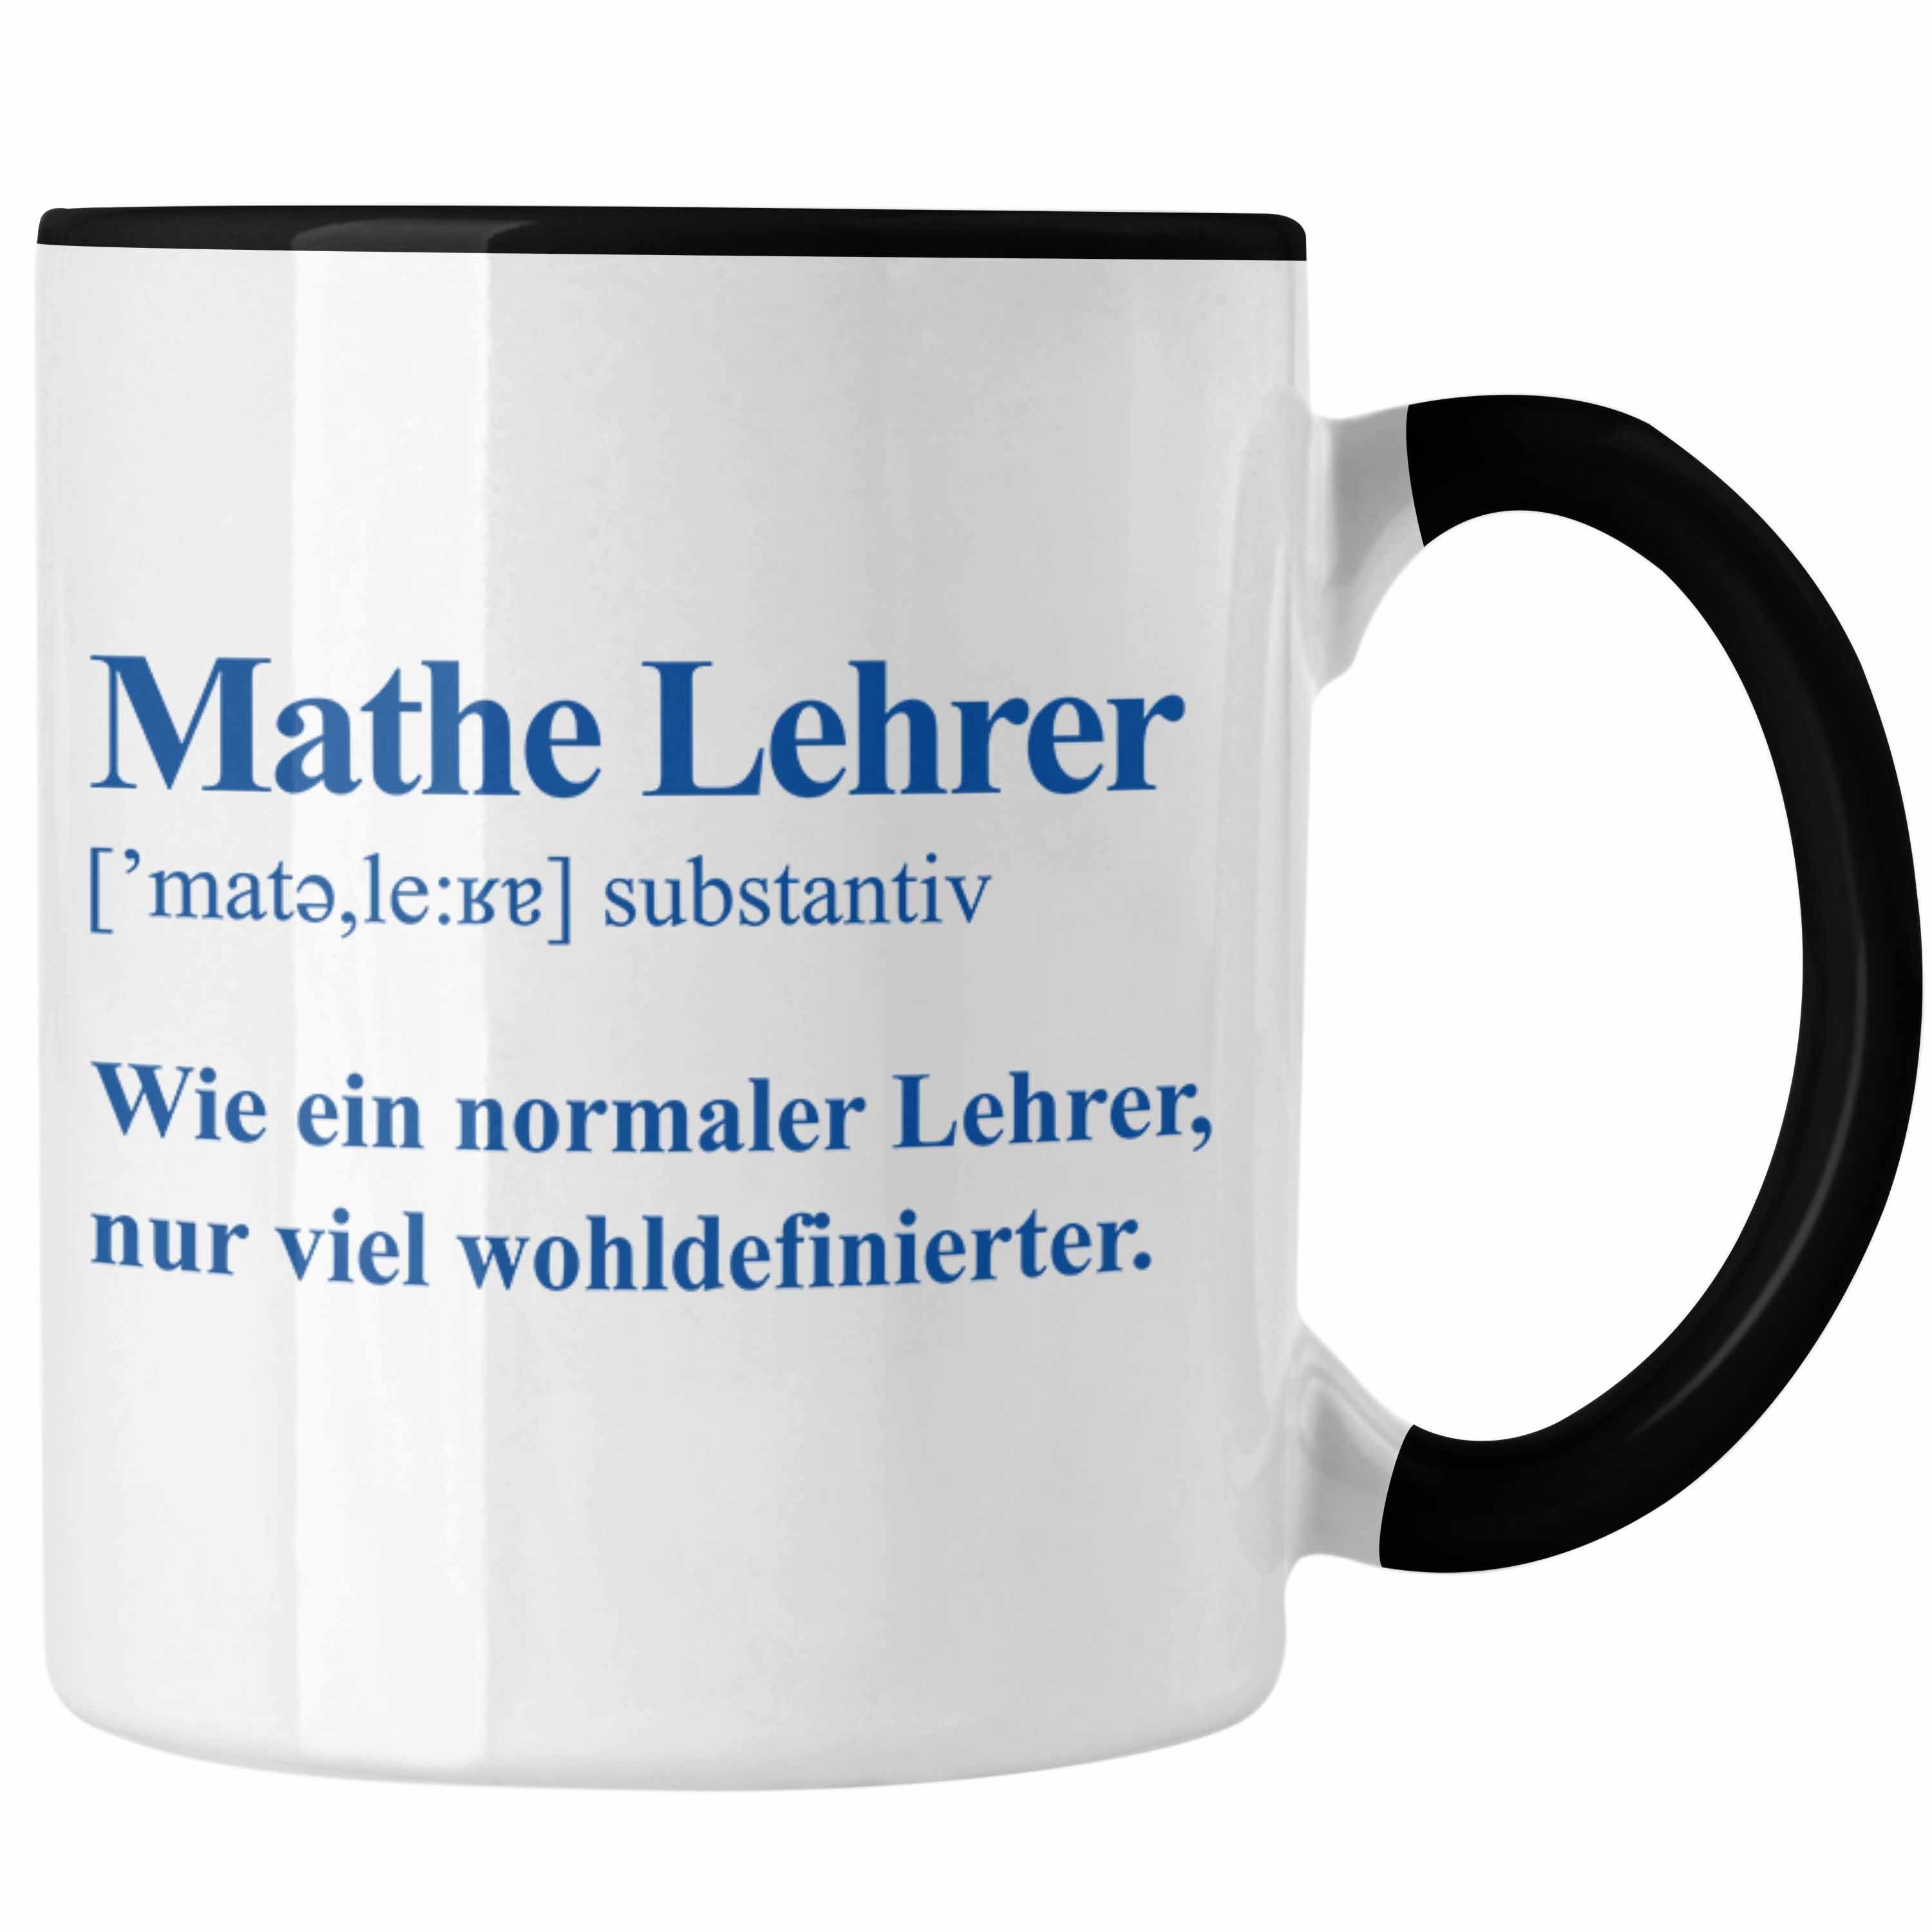 Trendation Tasse Trendation - Mathelehrer Tasse Mathematiker Tassen mit Spruch Lustig Kaffeetasse Geschenk Mathe Lehrer Schwarz